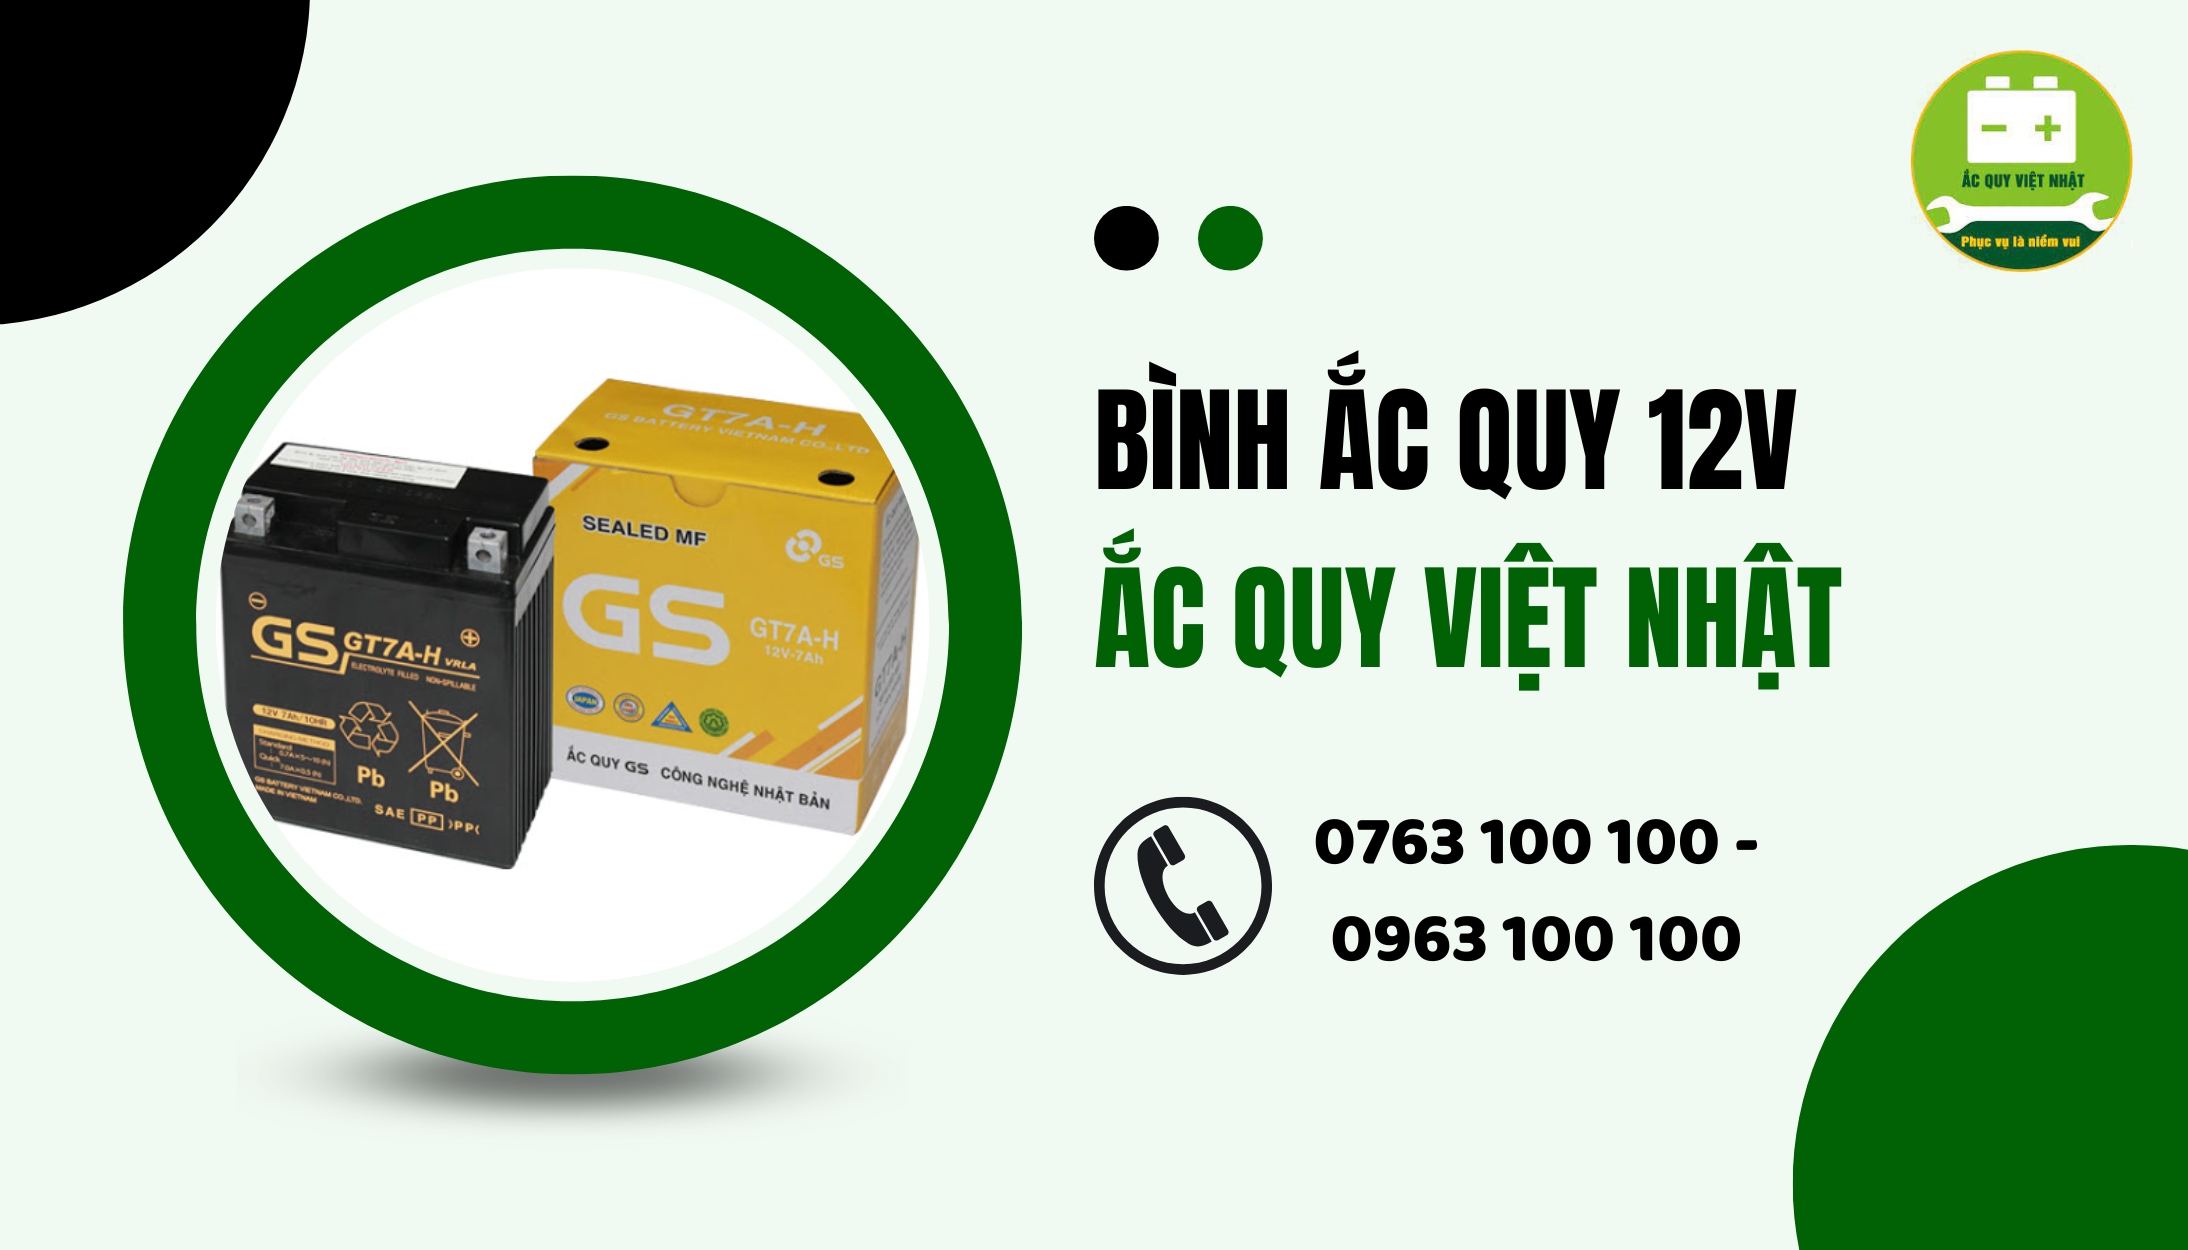 Mua ắc quy 12V tại Ắc Quy Việt Nhật